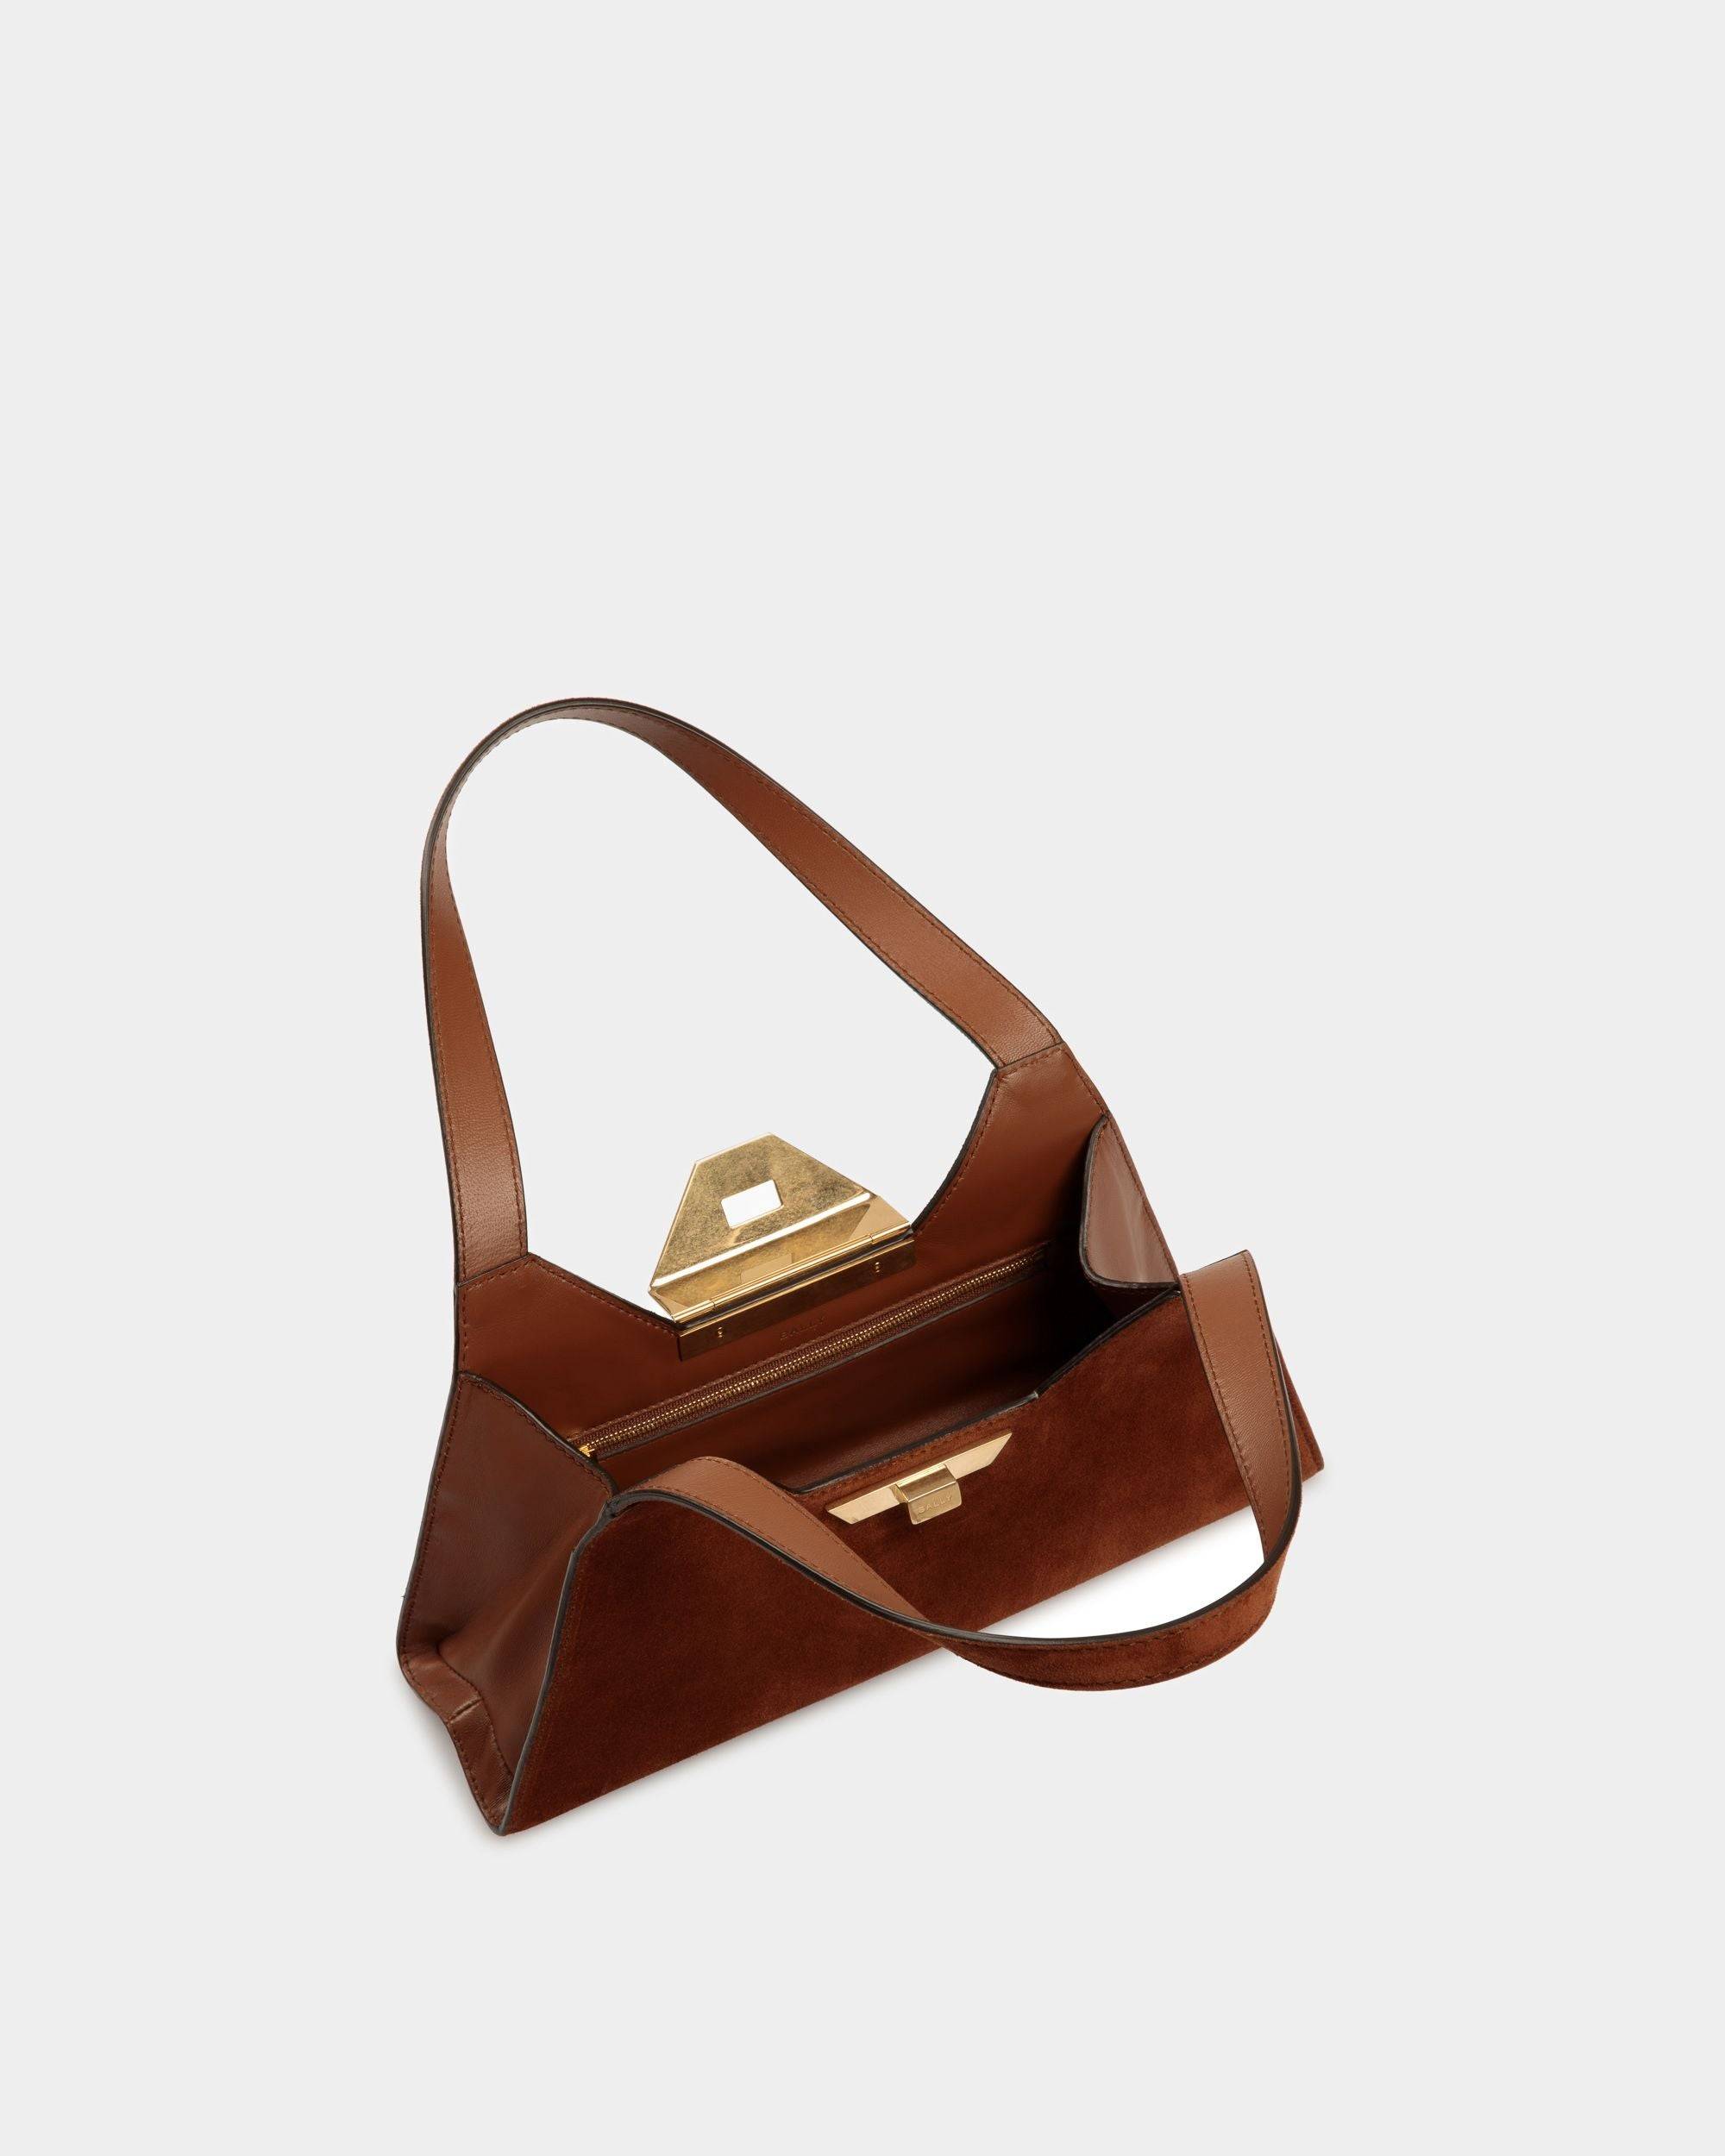 Trilliant Small Shoulder Bag | Women's Shoulder Bag | Brown Suede Leather | Bally | Still Life Open / Inside